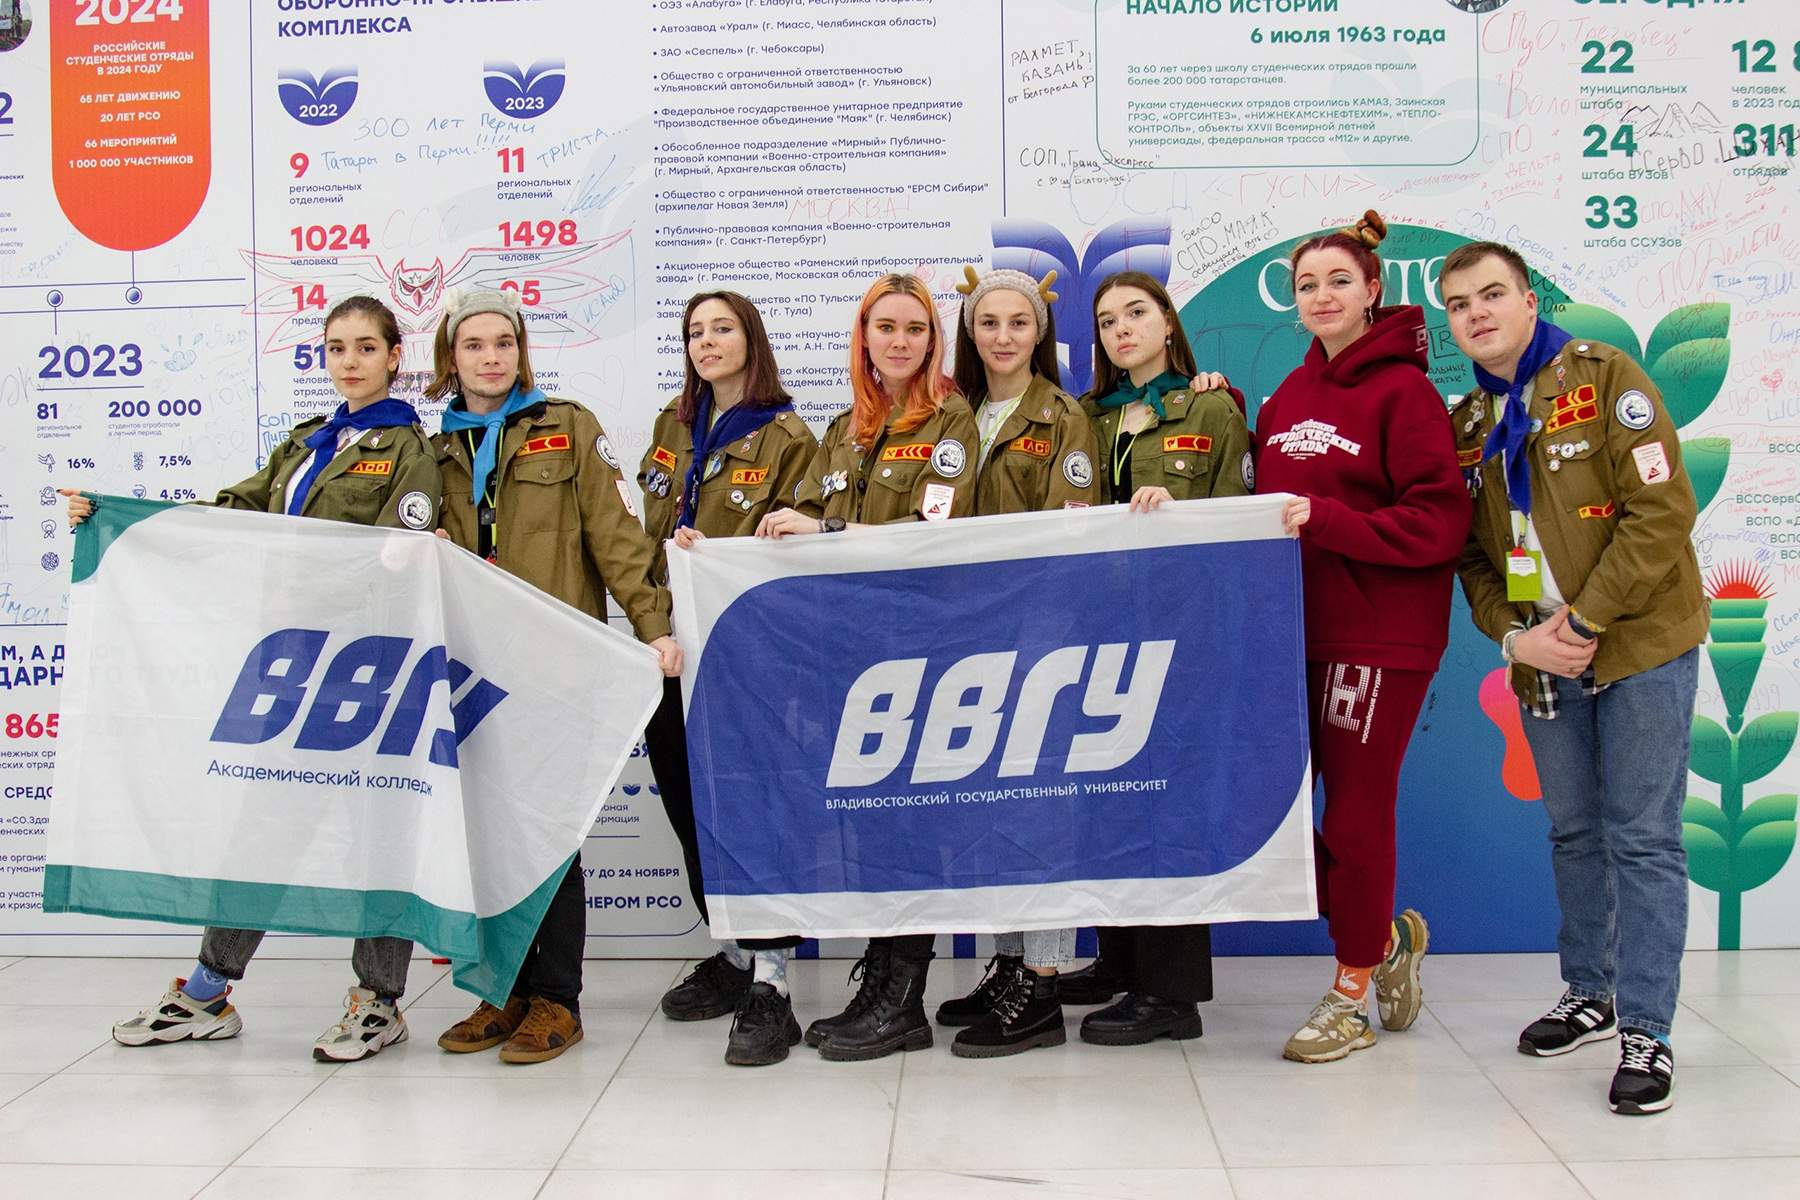 Штаб студенческих отрядов ВВГУ побывал на Всероссийском слёте студенческих отрядов в Казани